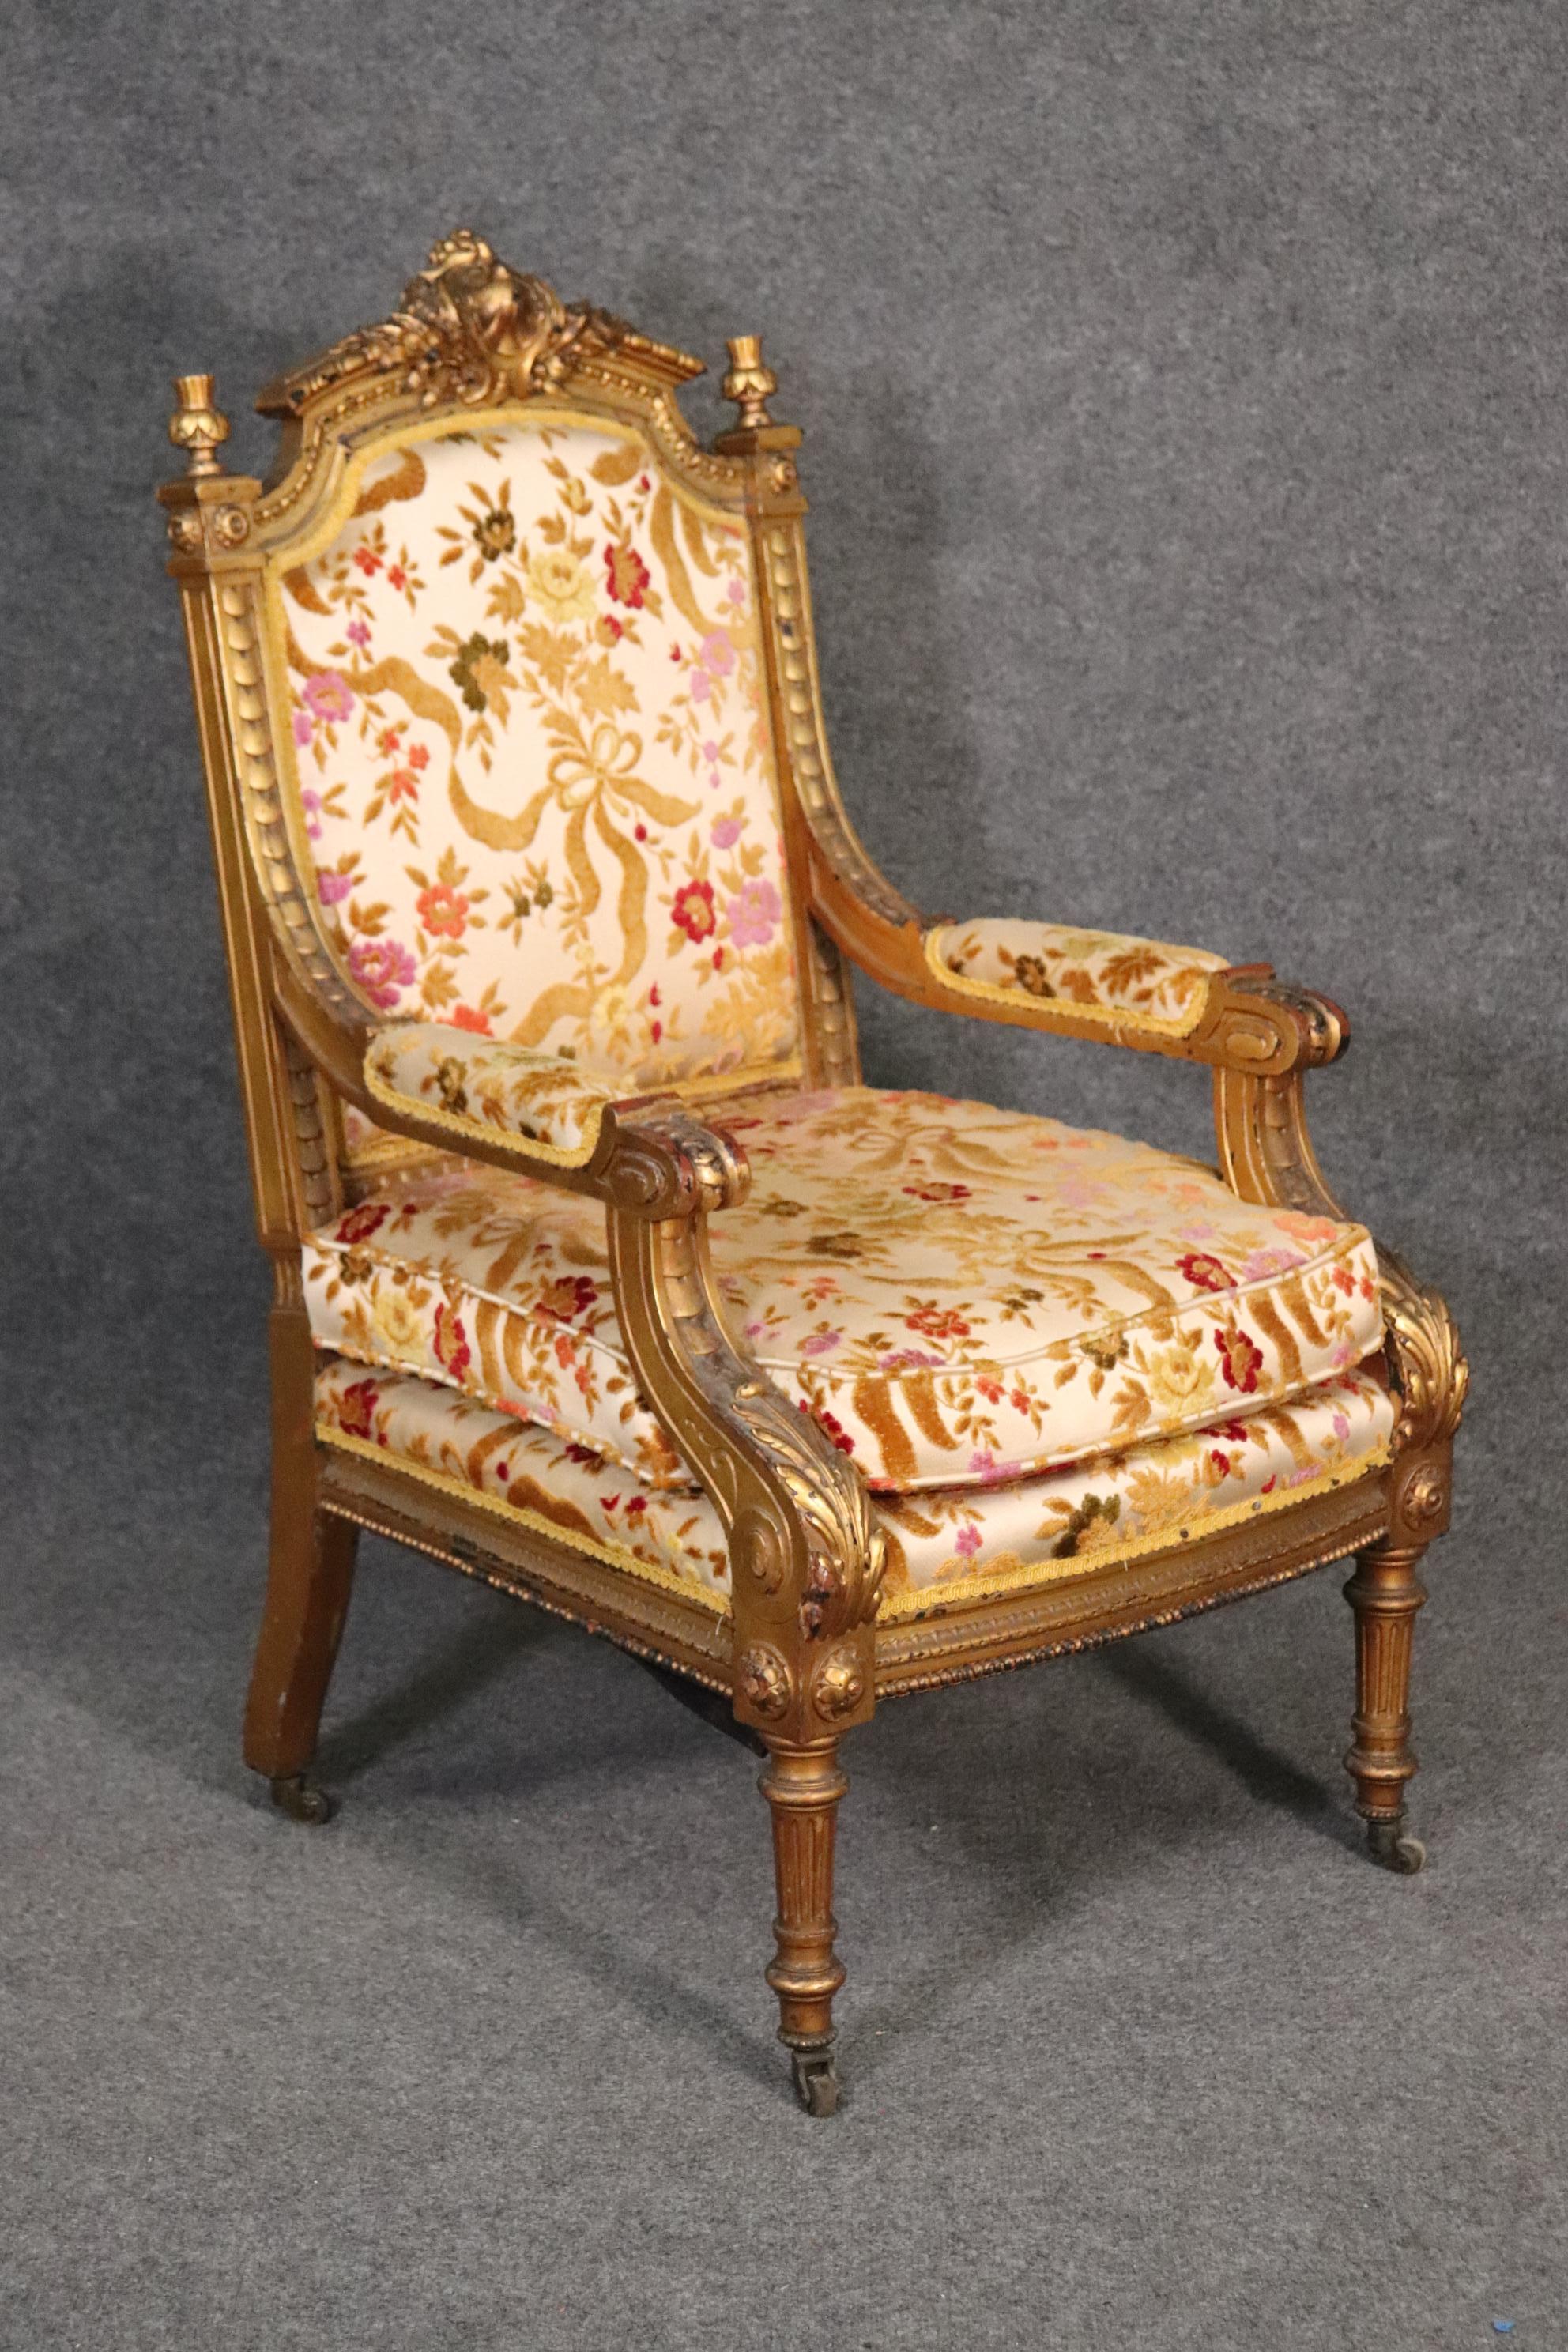 Il s'agit d'un magnifique fauteuil français doré qui peut facilement ajouter un peu de caractère à un coin d'une pièce ou à côté d'un canapé ou d'un sofa neutre. La chaise est magnifiquement fabriquée et a conservé sa tapisserie d'origine et sa